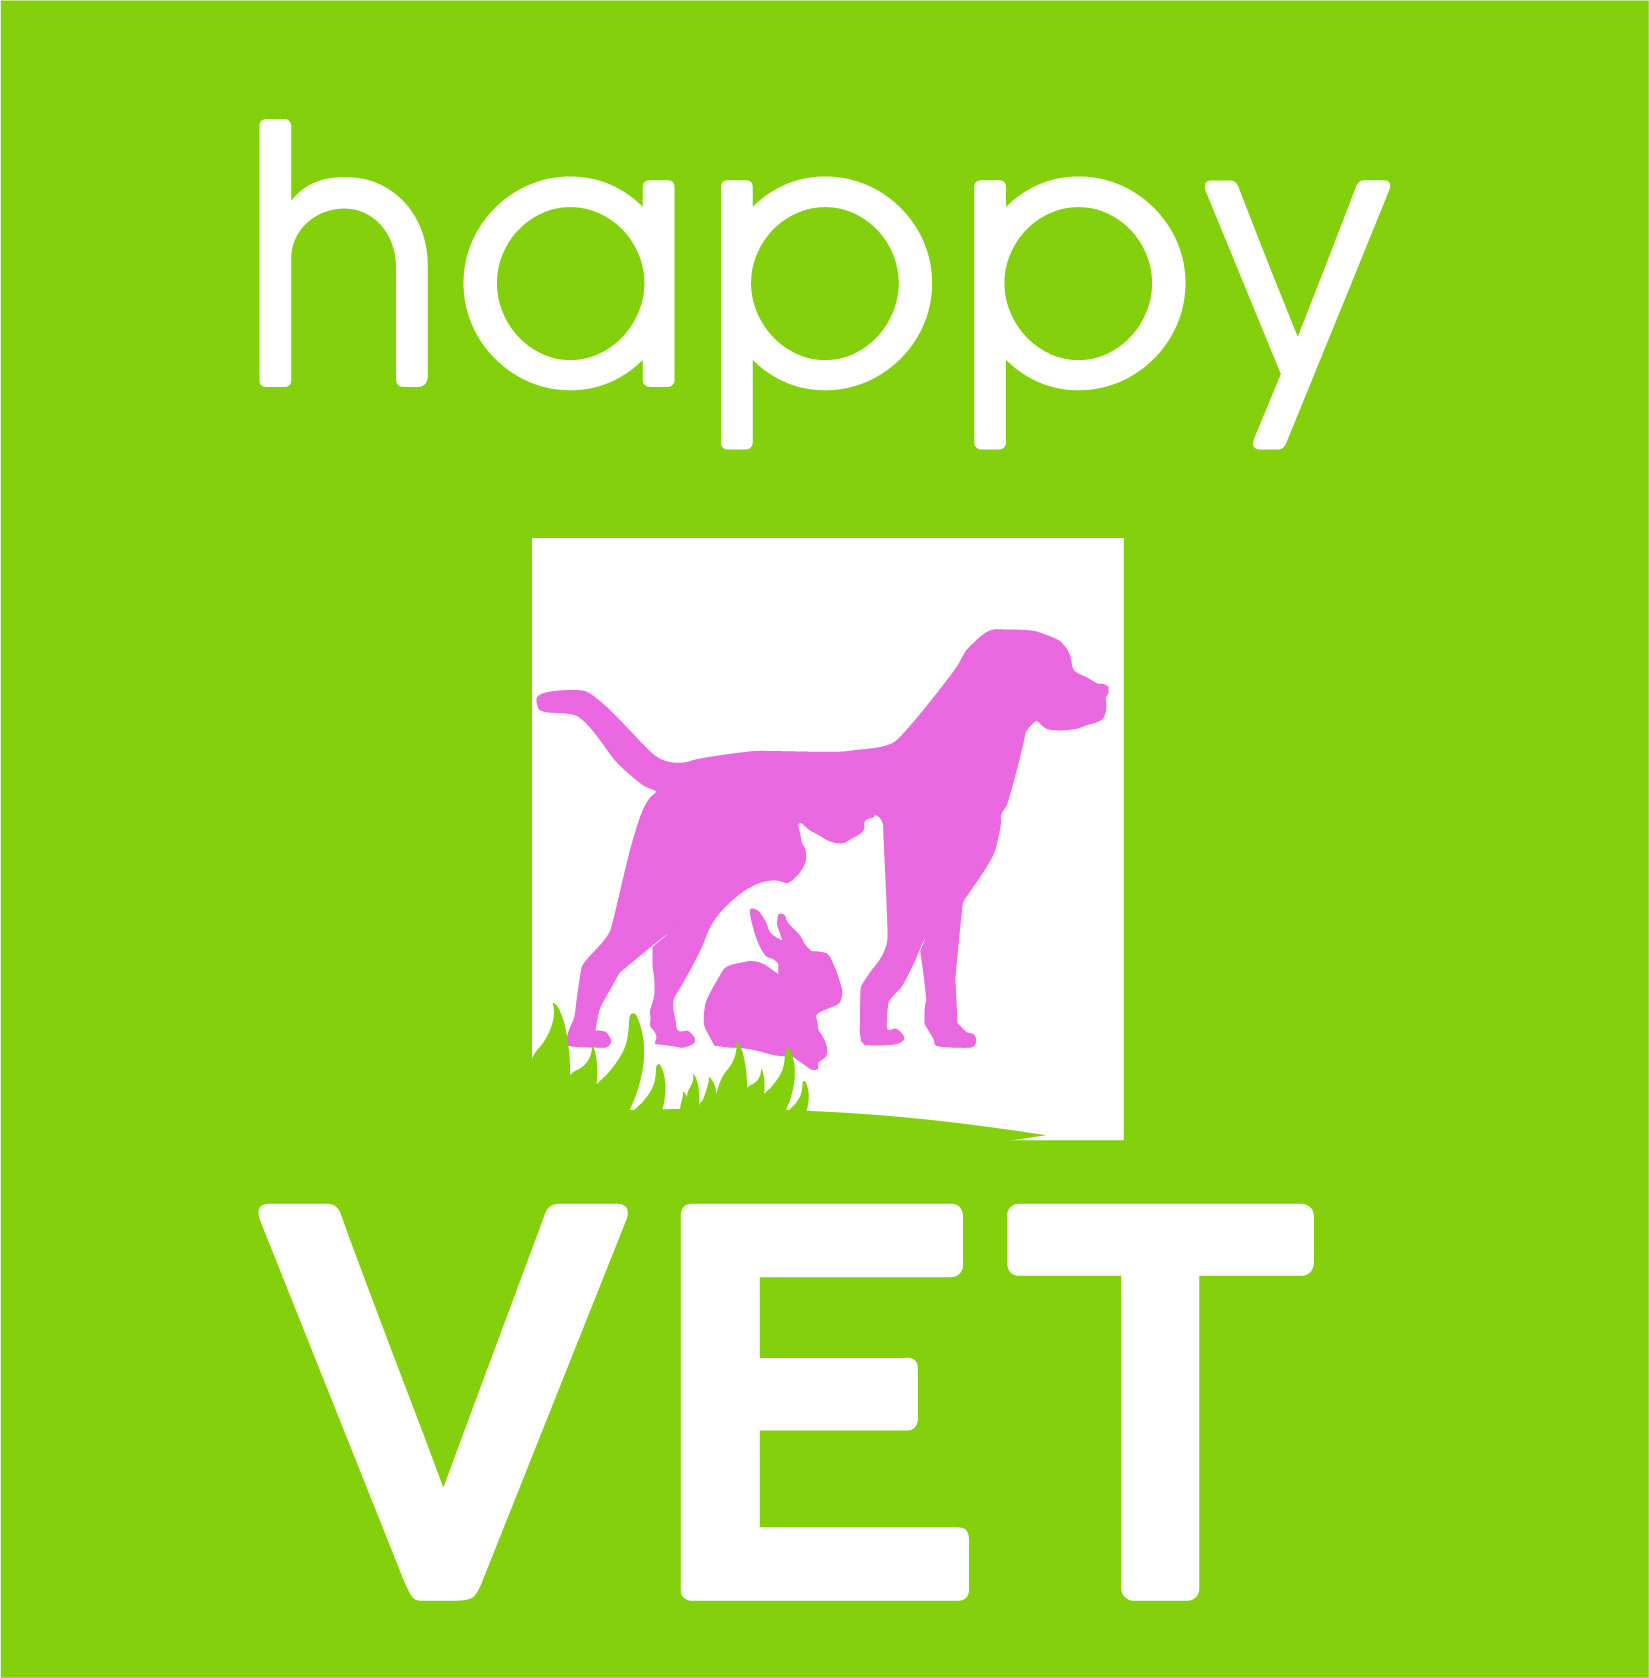 affiche de happy vet avec un logo de chien et de chat en rose sur fond vert